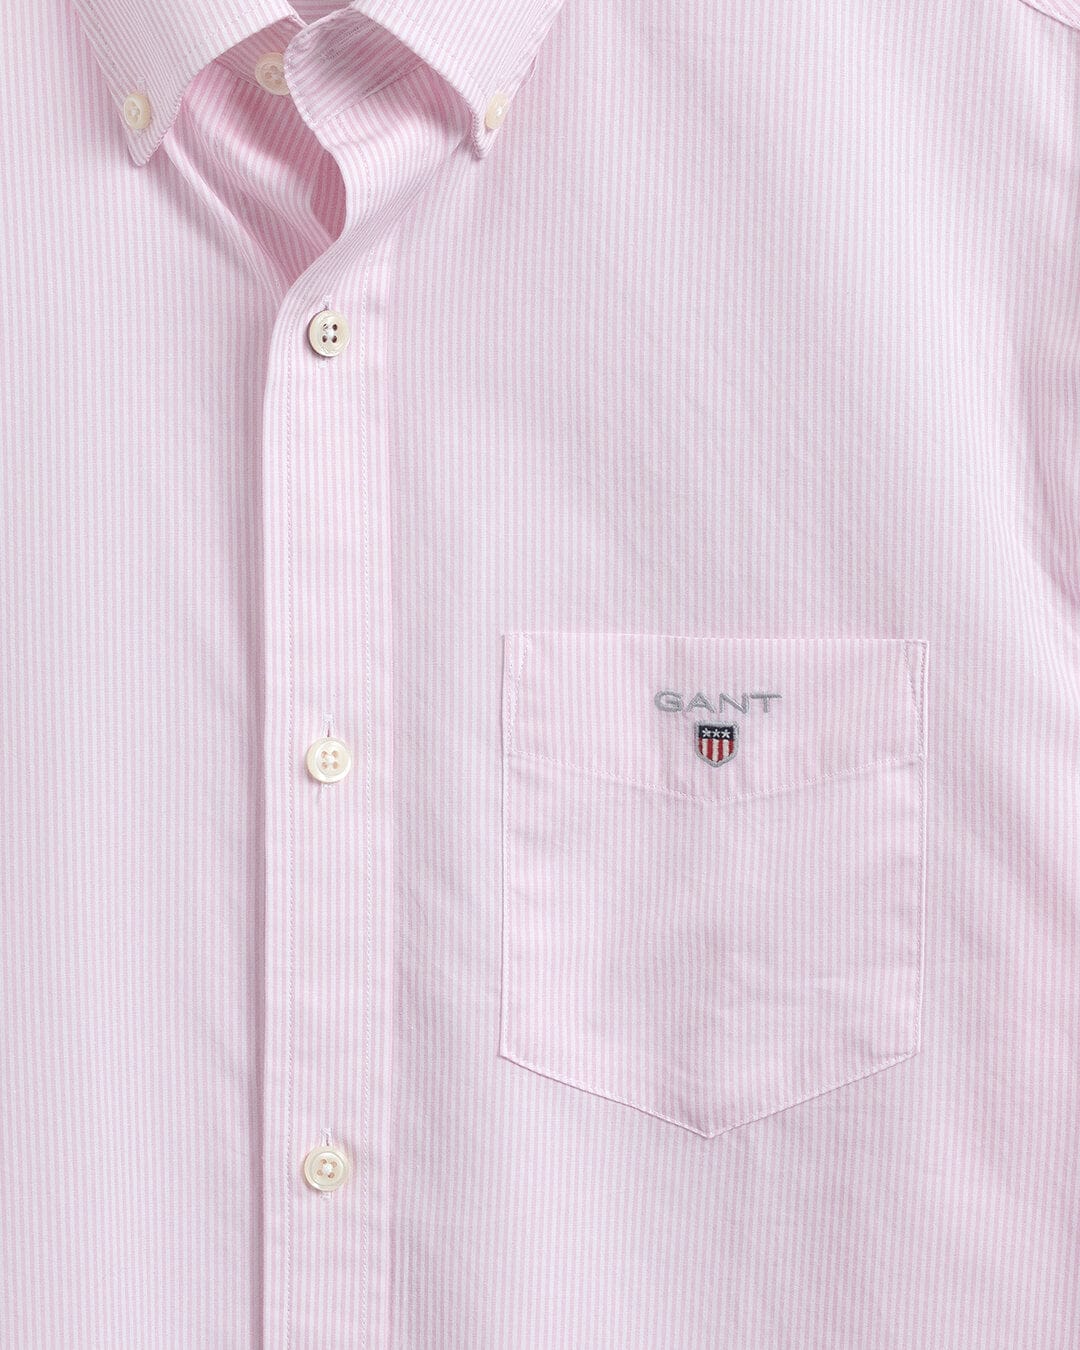 Gant Shirts Gant Regular Fit Banker Broadcloth Pink Shirt